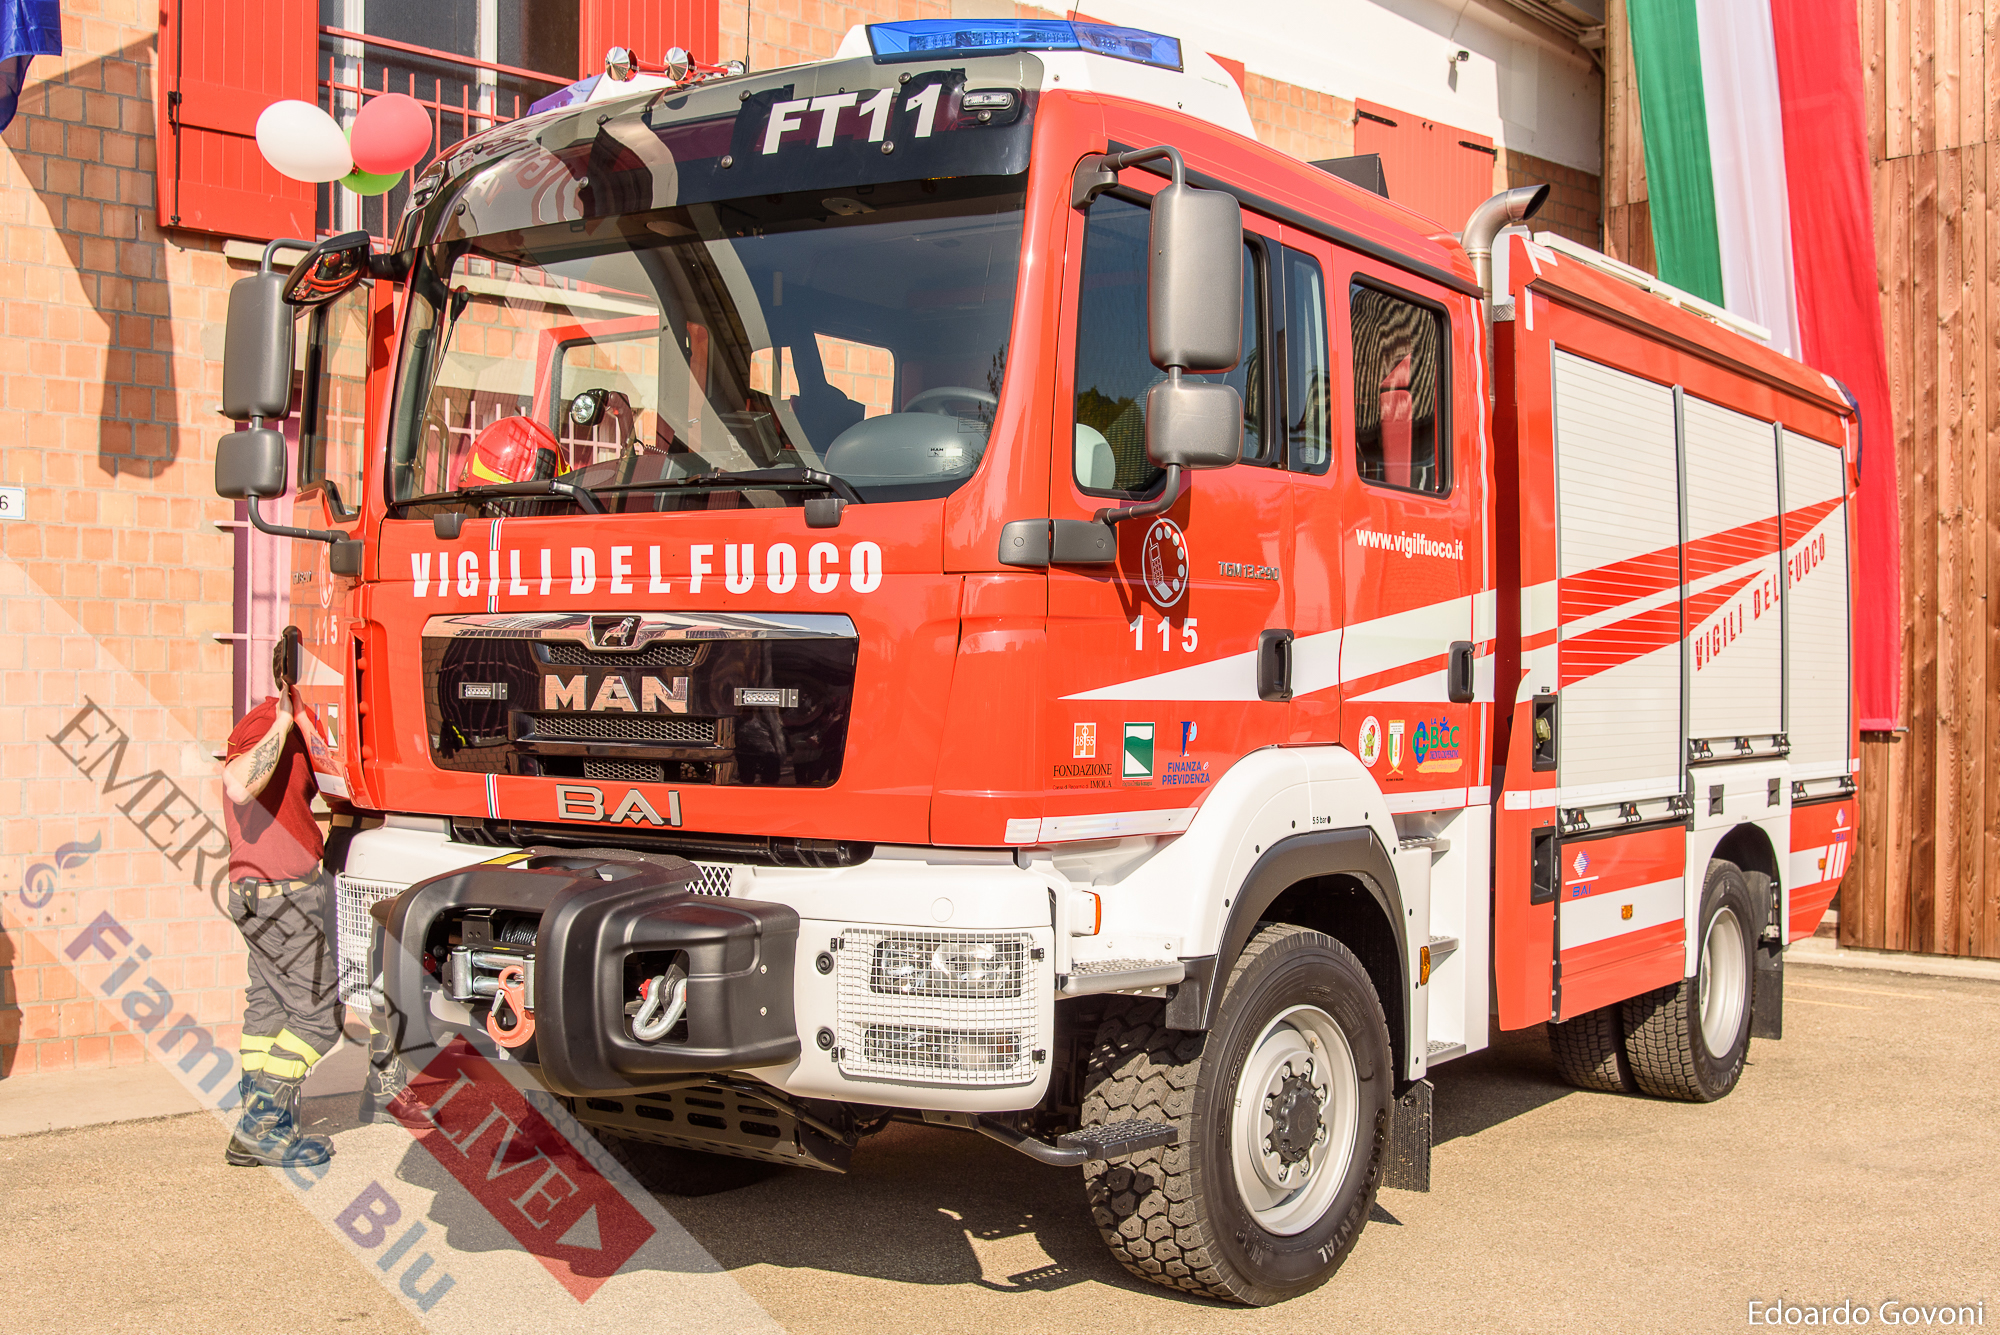 Veicoli Antincendio Municipali: BAI presenta il modello “VSAC 3400 M” | Emergency Live 12